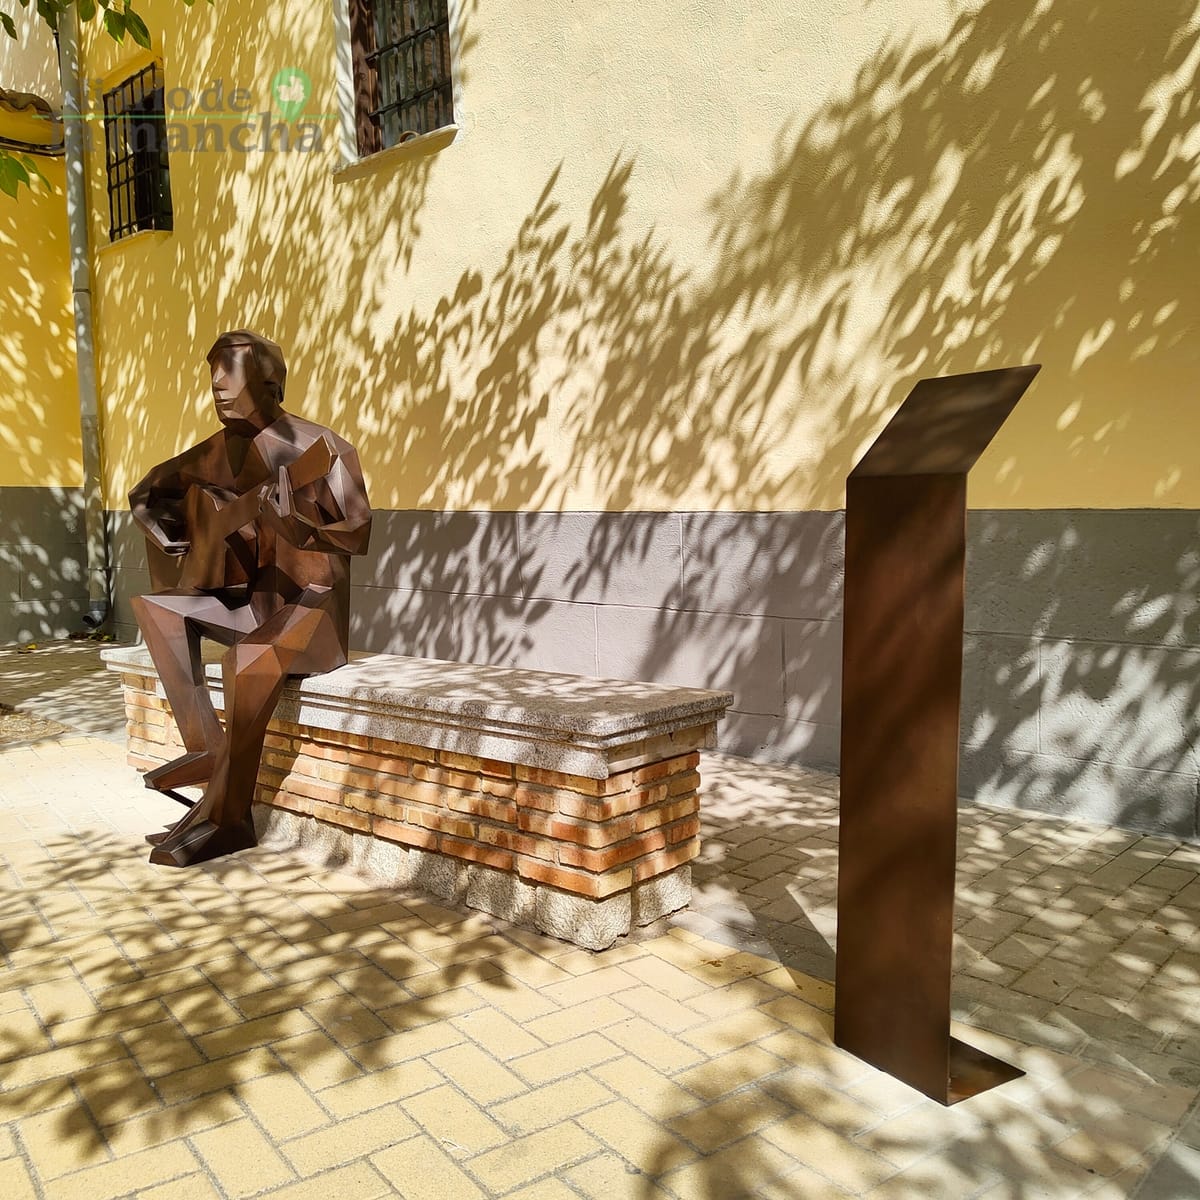 Ajofrín rinde homenaje al guitarrista Demetrio Ballesteros con una escultura de Carlos Otal 2